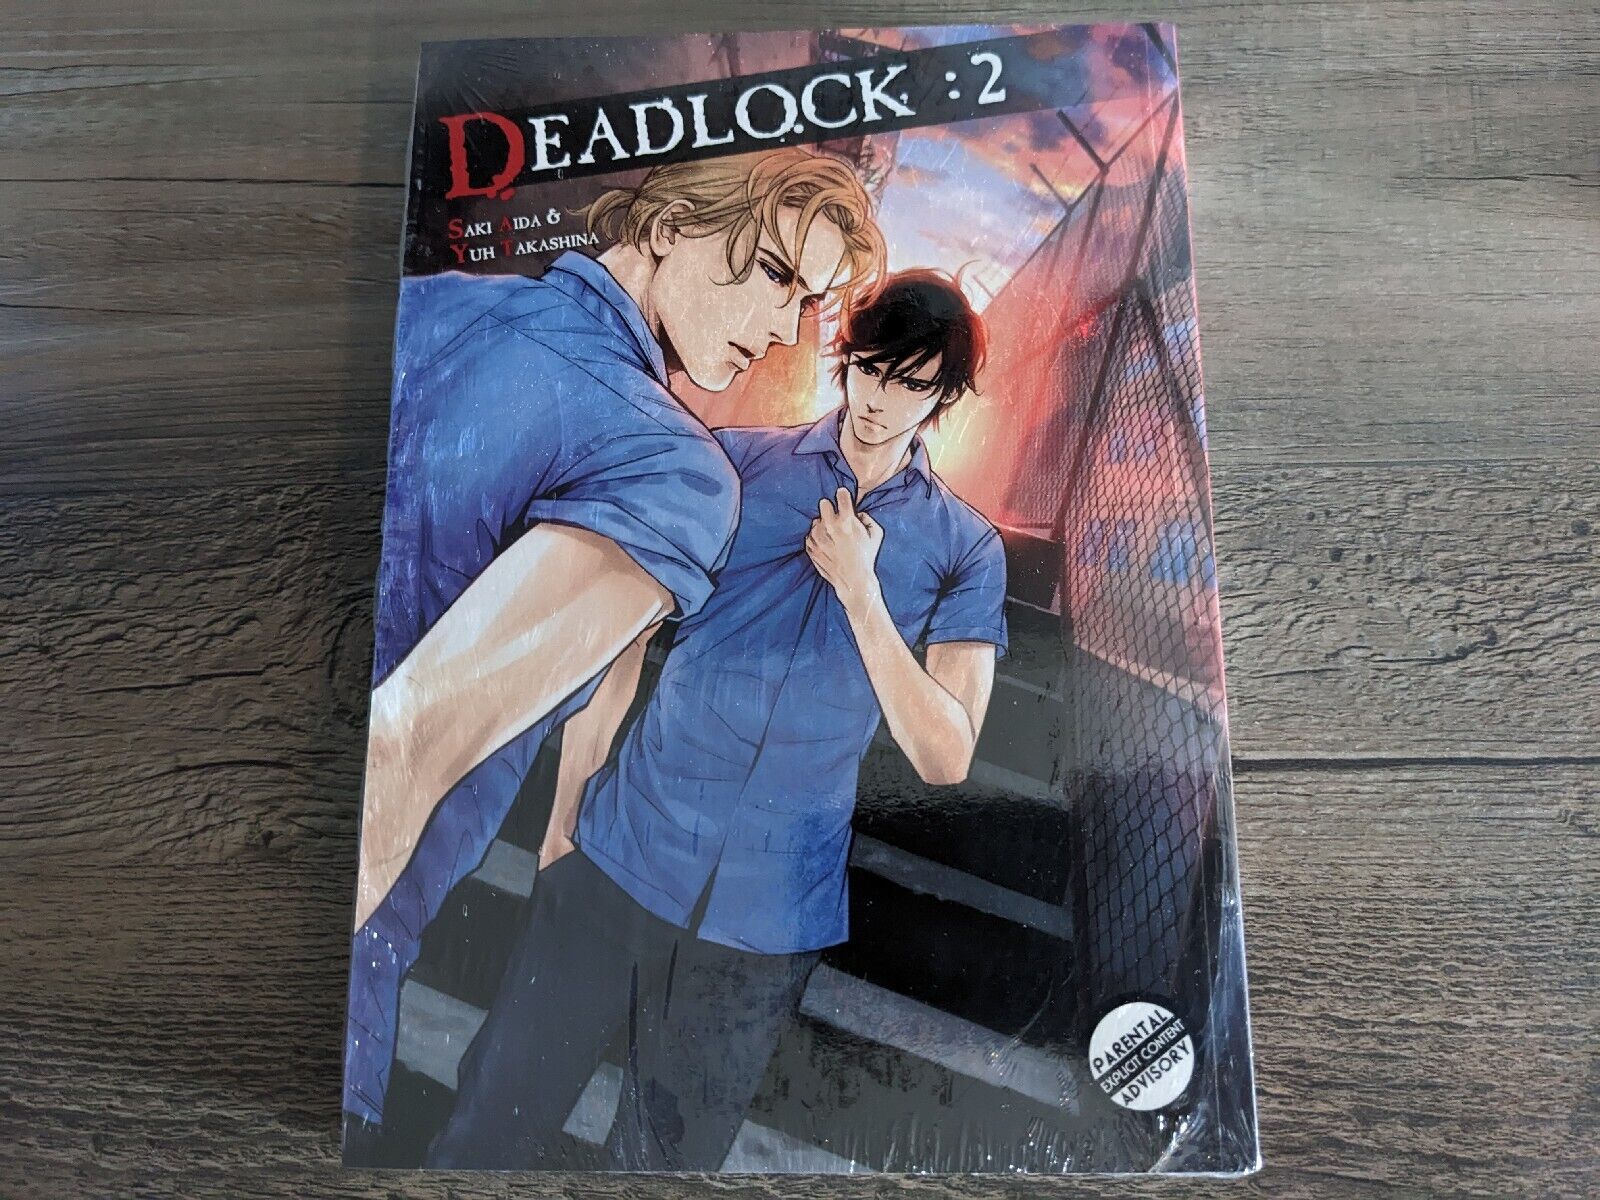 Deadlock Vol 2 - Brand New English Manga BL Yaoi Saki Aida Yuh Takashina